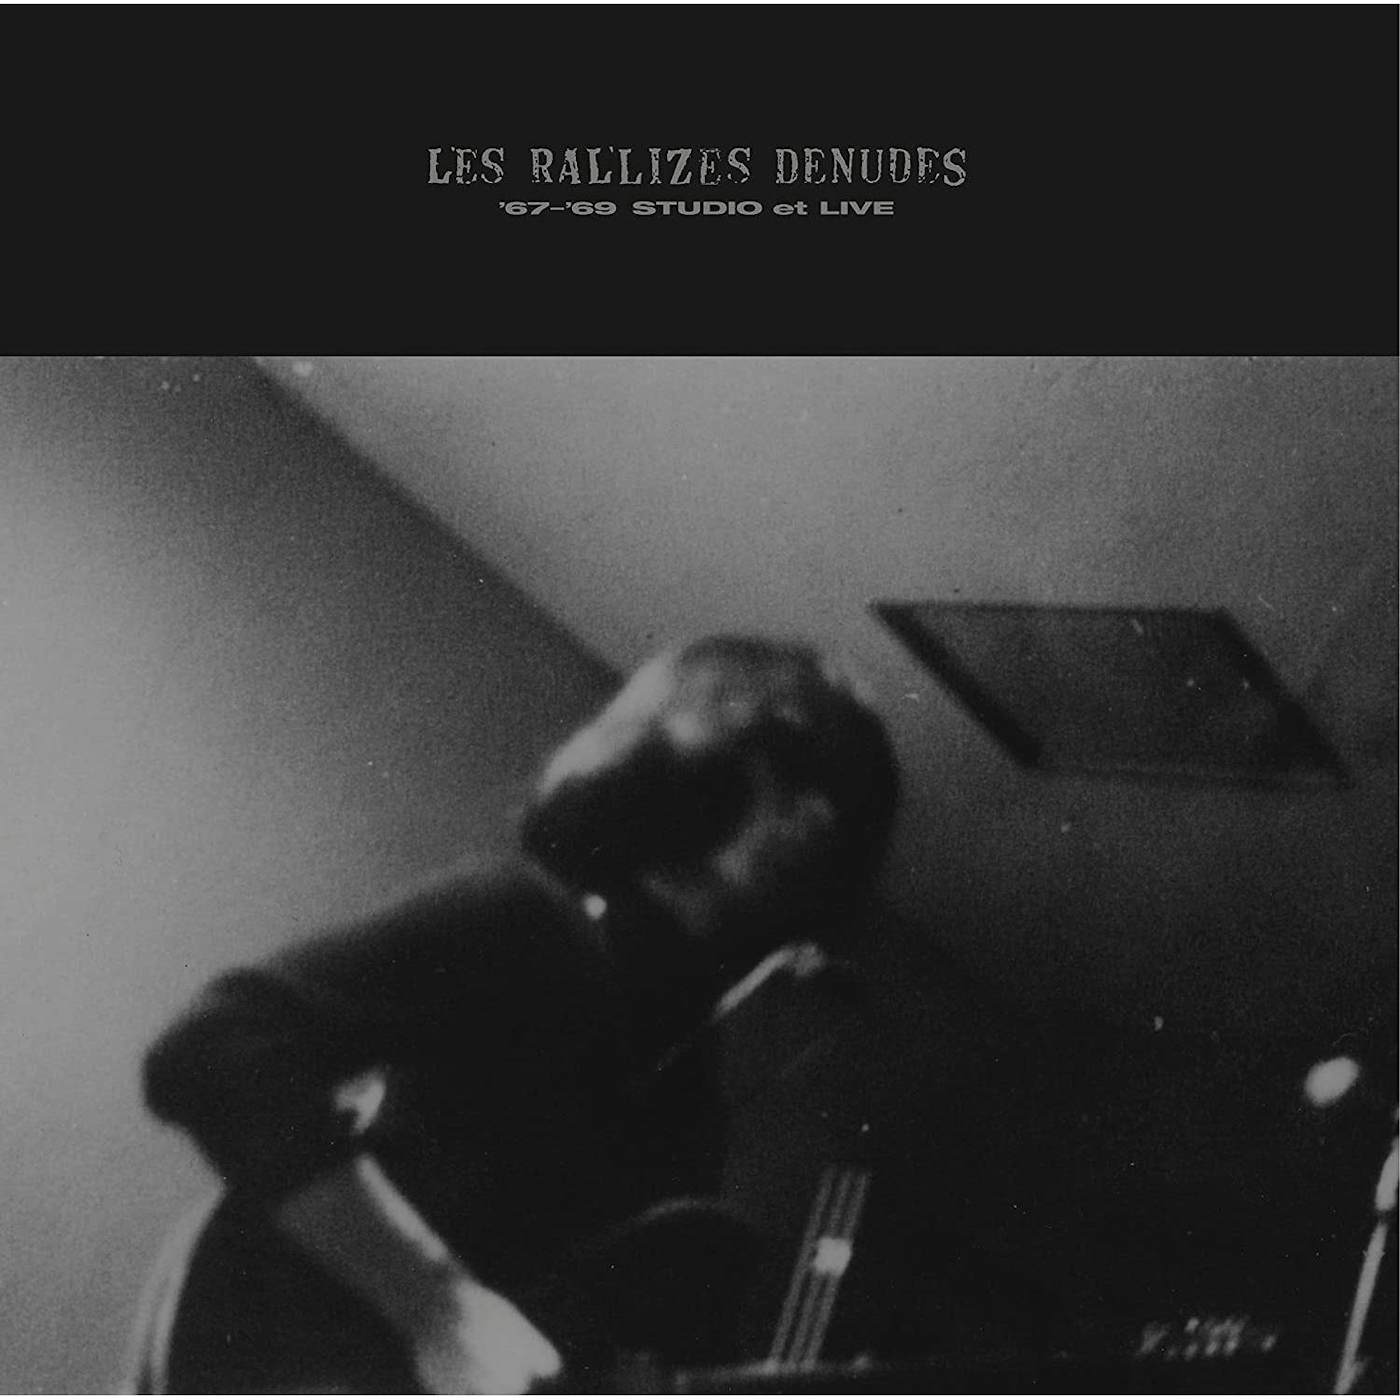 Les Rallizes Dénudés 67-'69 STUDIO ET LIVE Vinyl Record